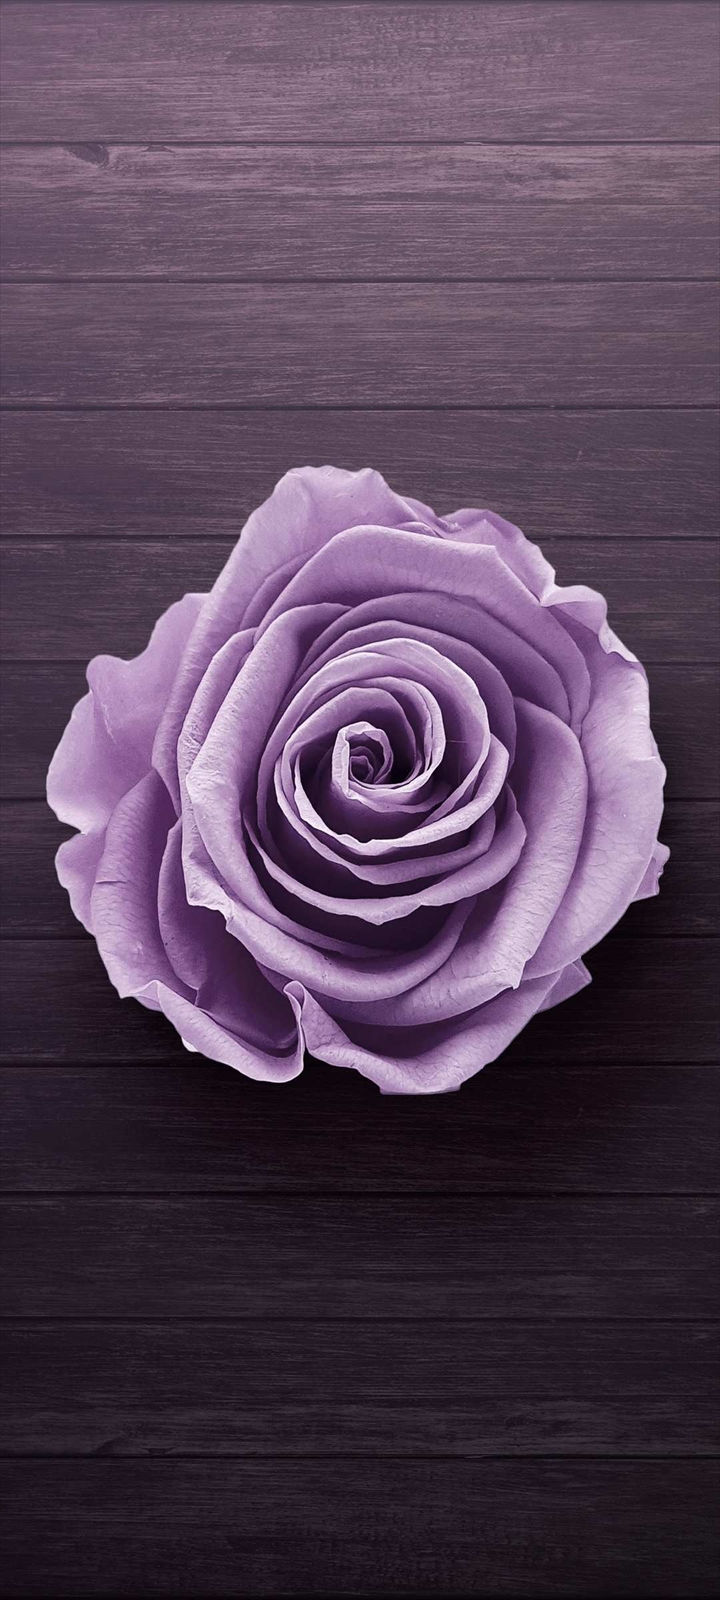 木の板の上の紫の薔薇 Moto G8 Power Lite 壁紙 待ち受け Sumaran